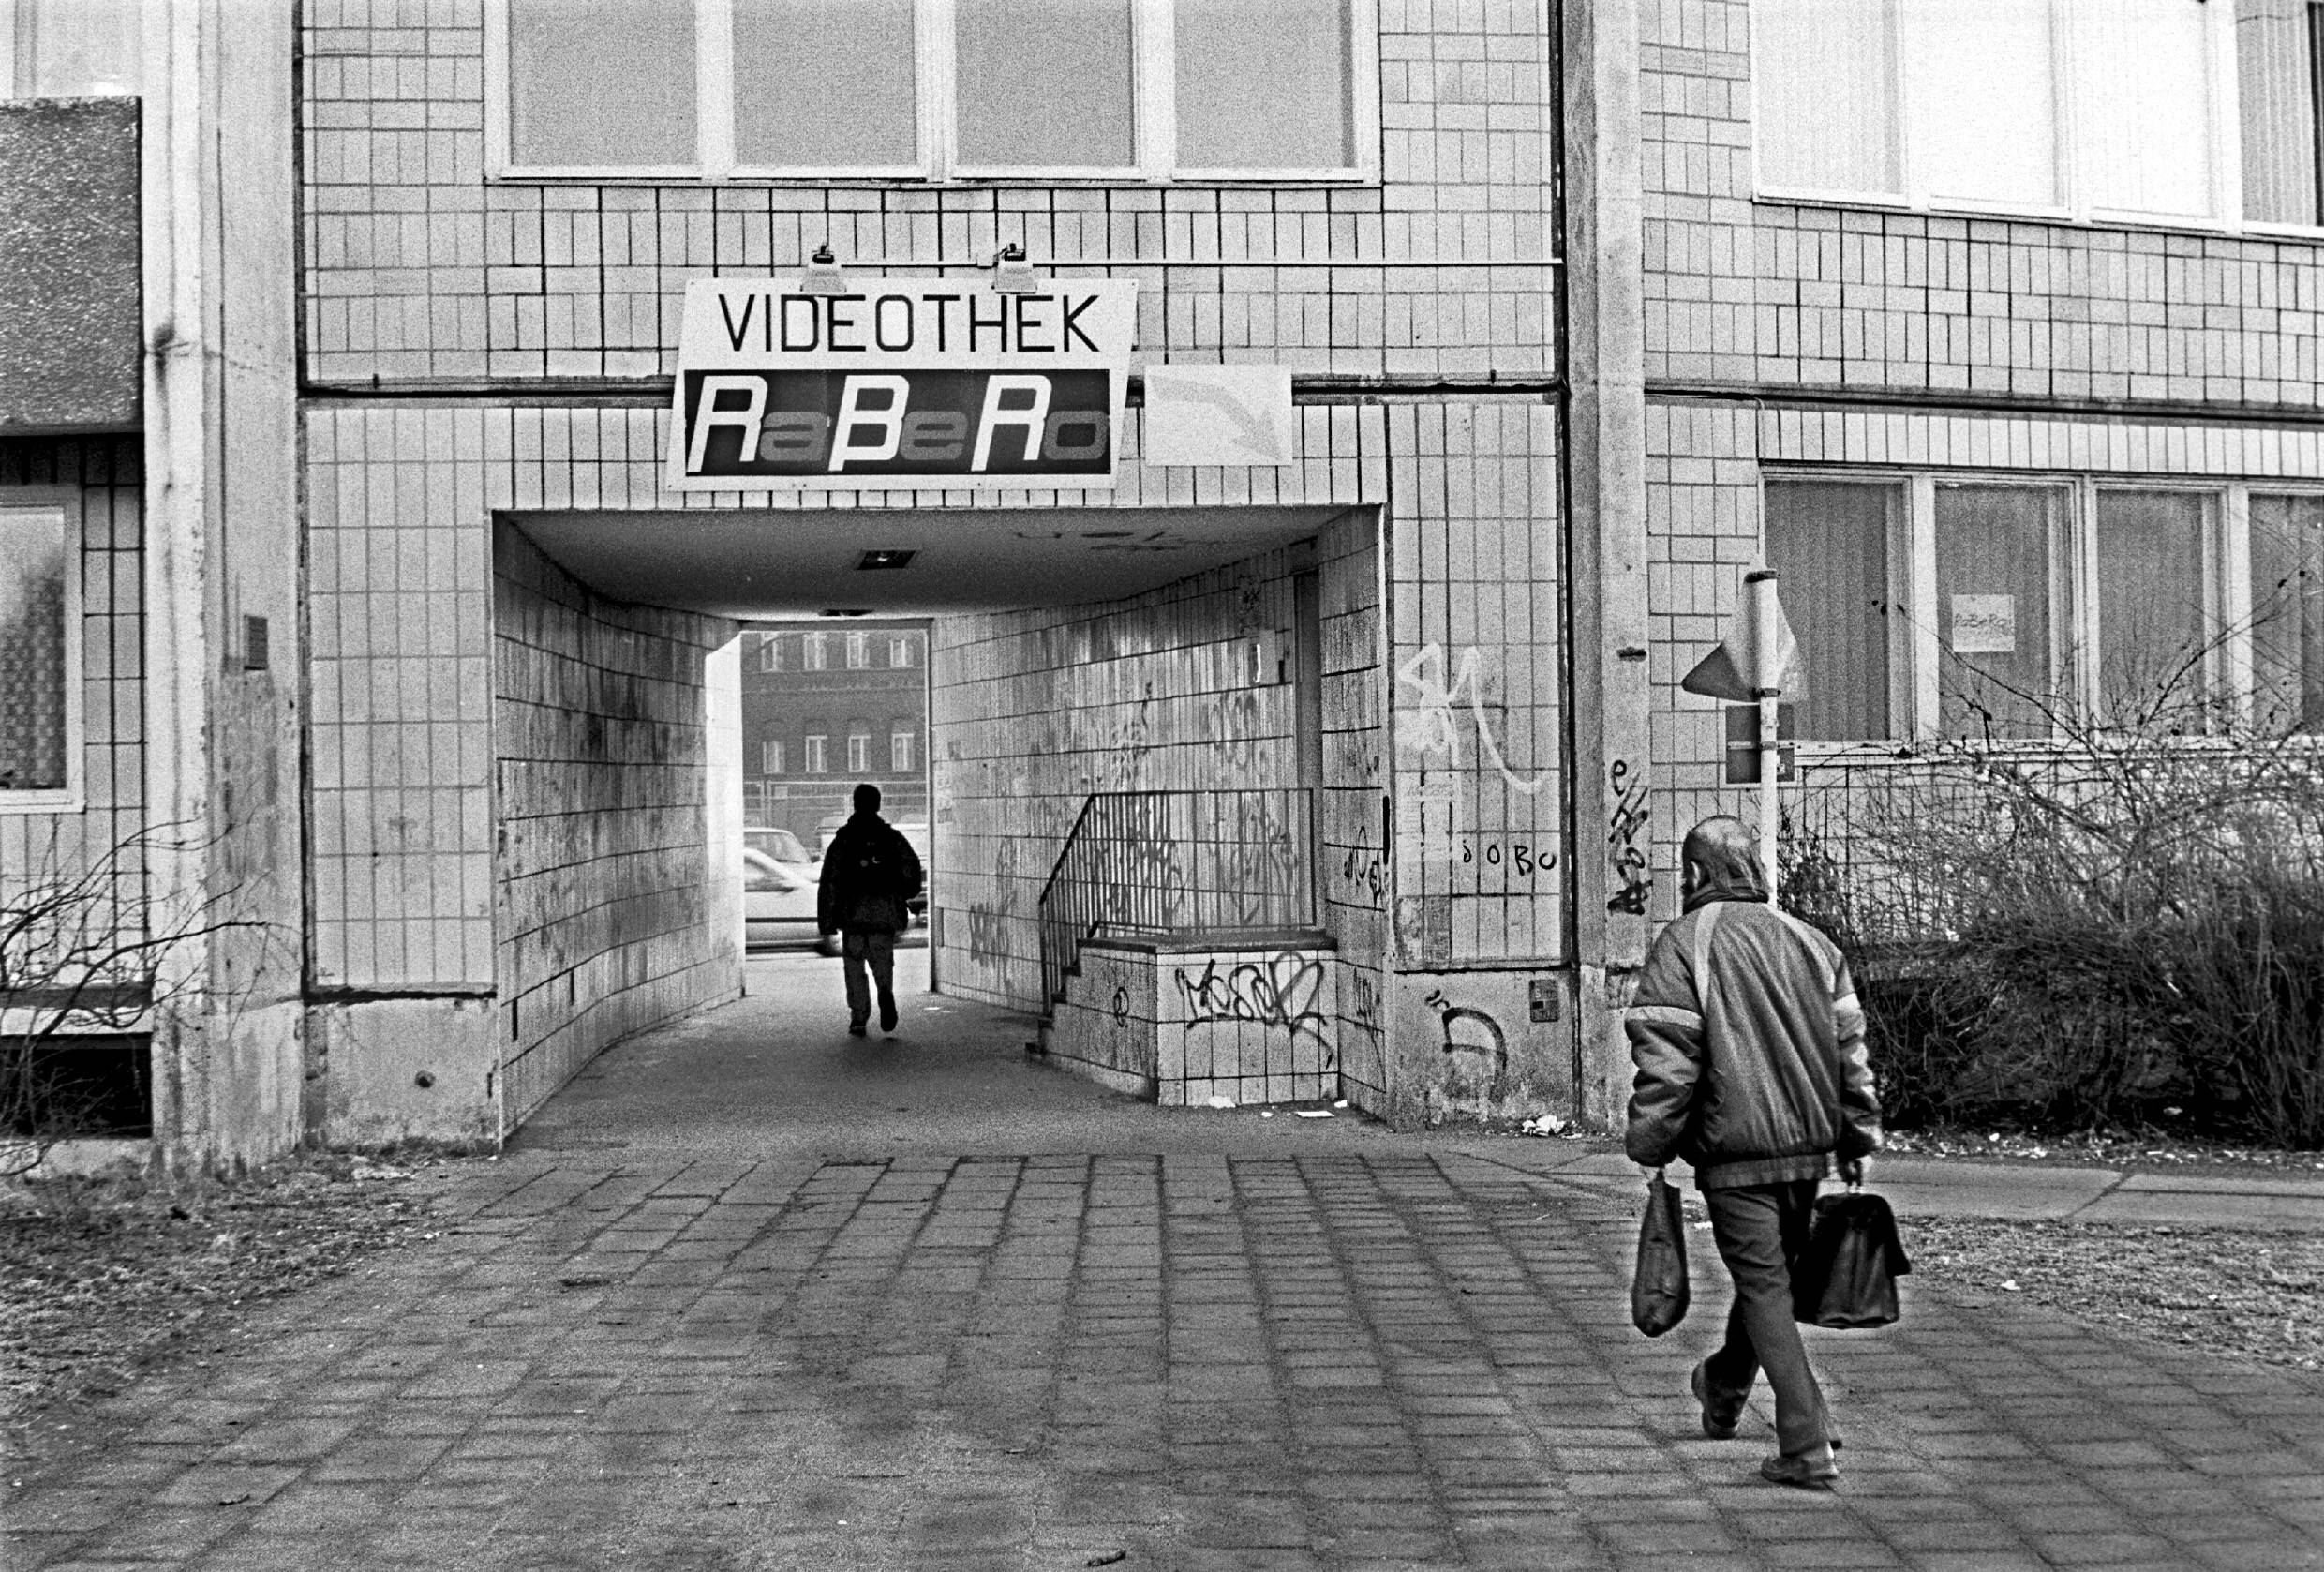 Videothek an der Frankfurter Allee in Lichtenberg, 1996. Foto: Imago/Rolf Zöllner